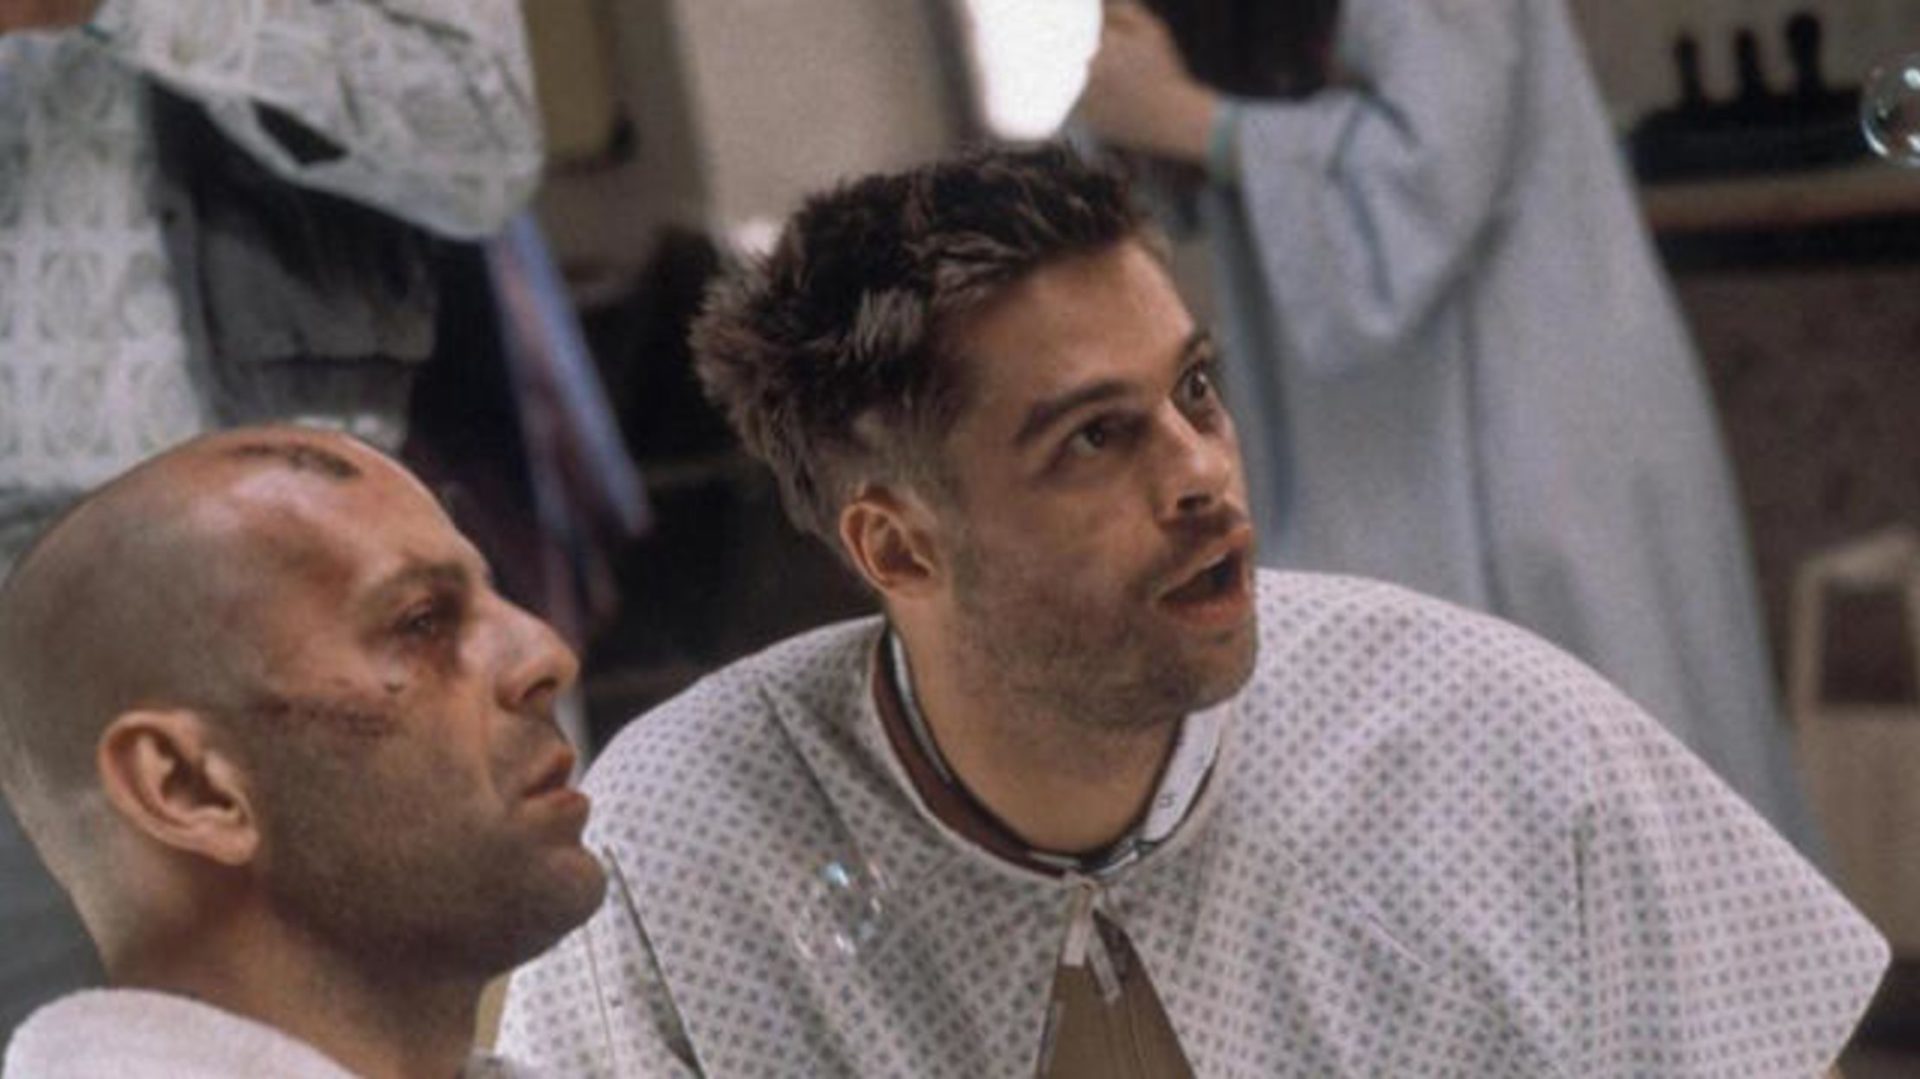 Brad Pitt “explodiu” no primeiro dia de gravações de Os 12 Macacos, lembra diretor